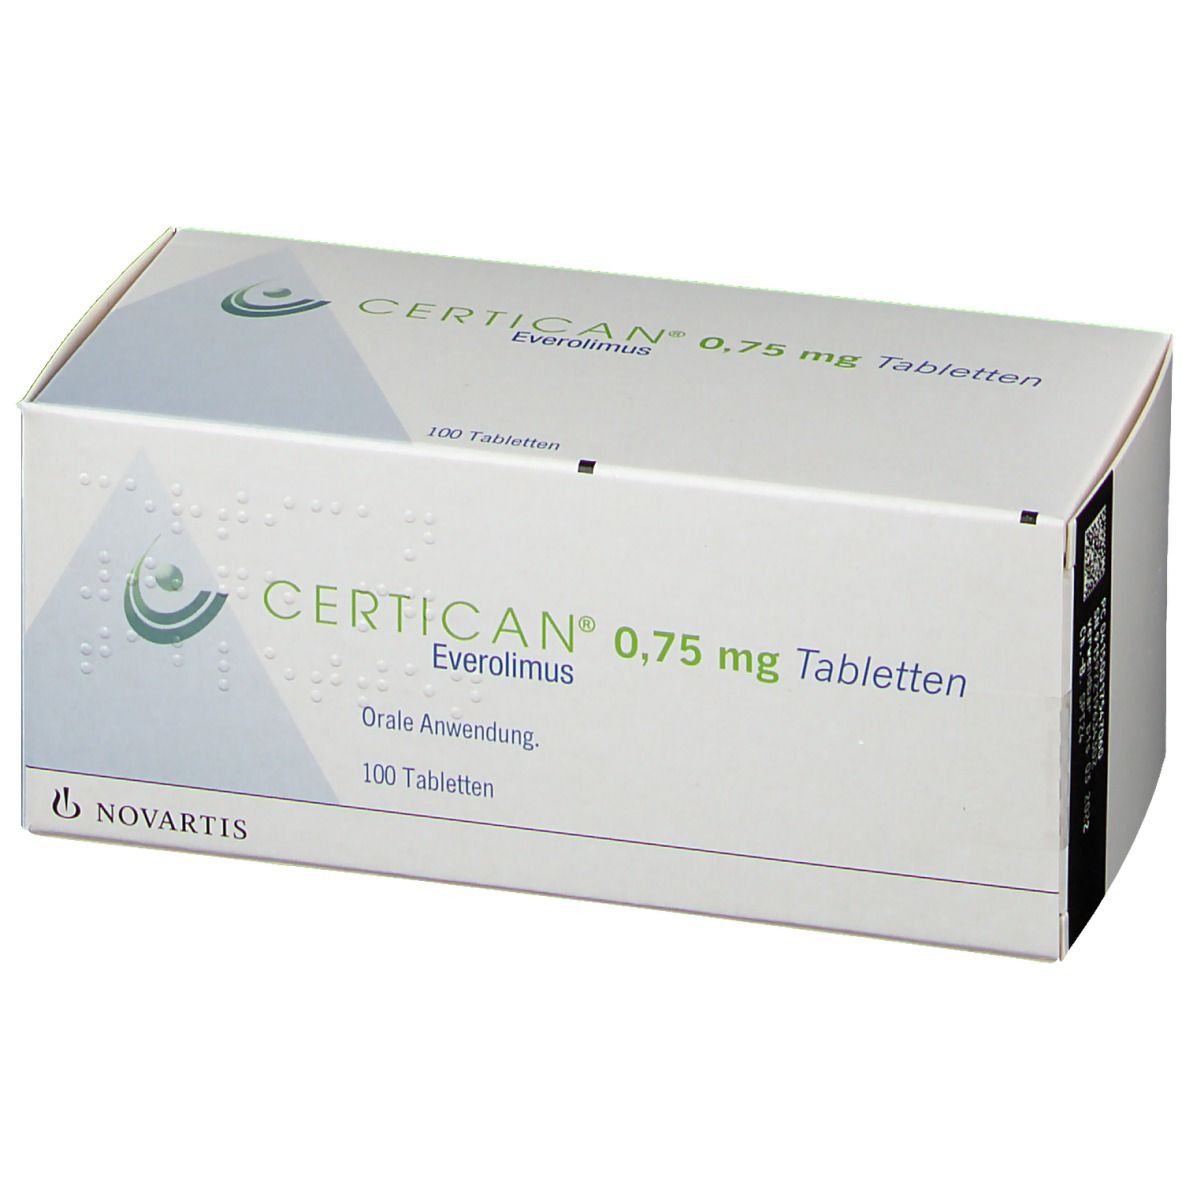 CERTICAN® 0,75 mg